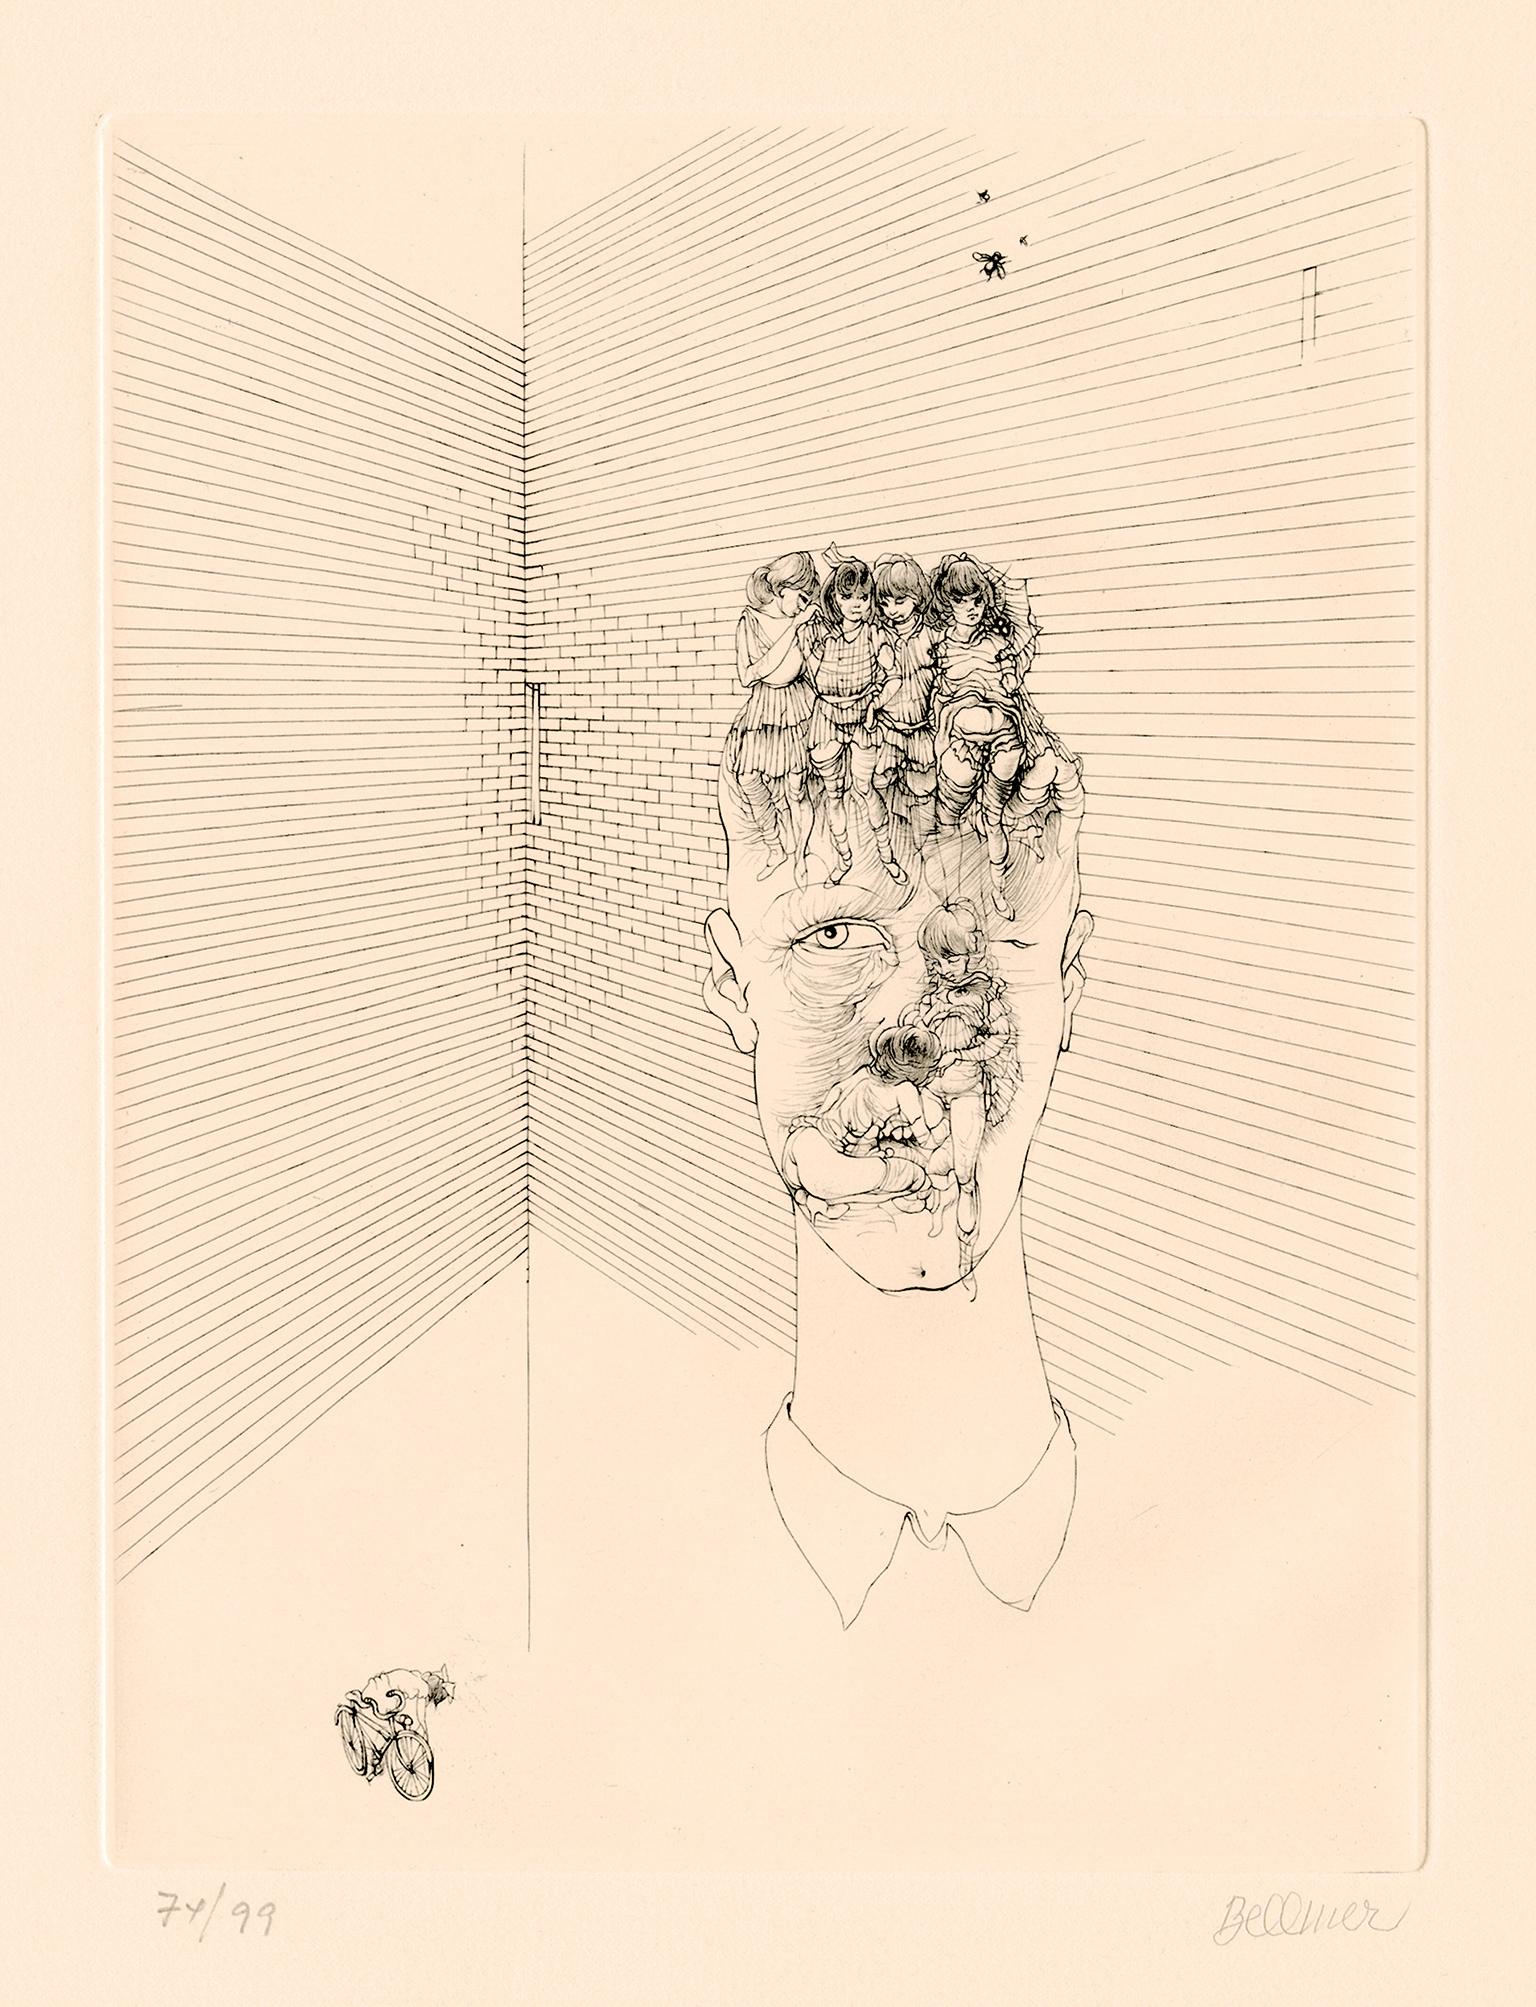 Abstract Print Hans Bellmer - Les yeux bleus - Surréalisme érotique des années 1970